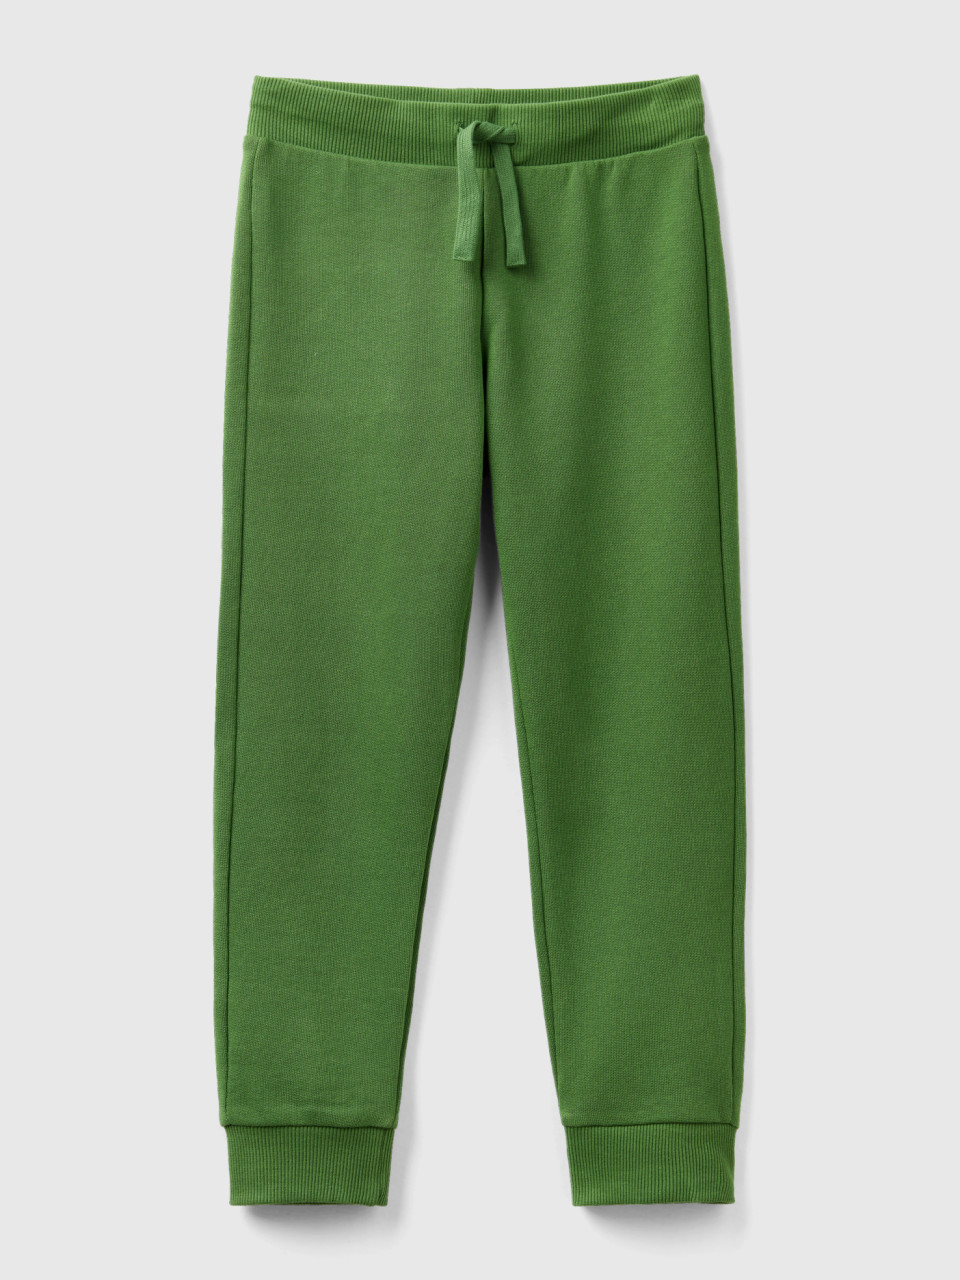 Benetton, Sportliche Hose Mit Tunnelzug, Militärgrün, male